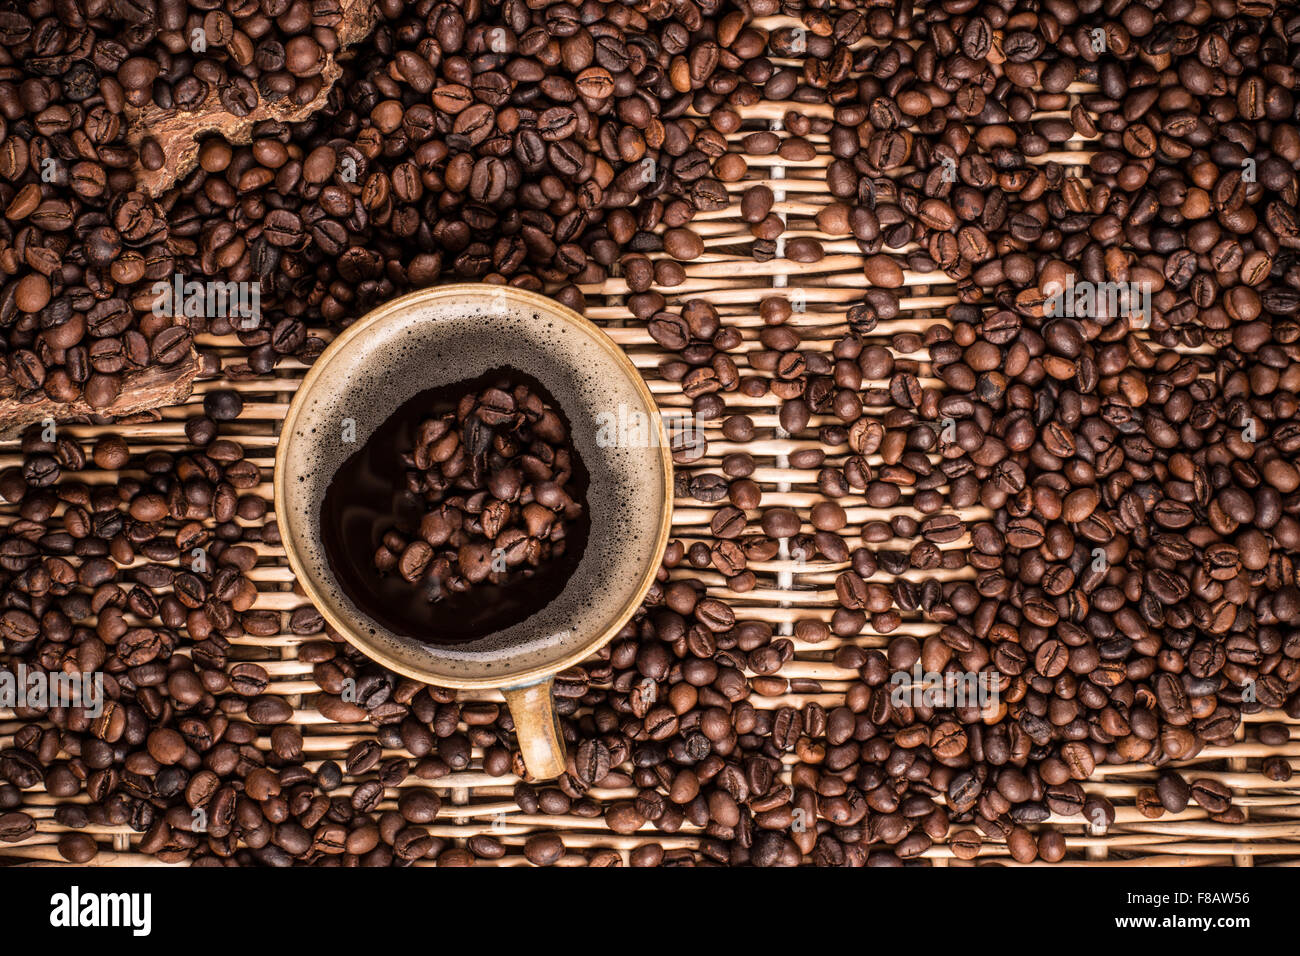 Vue de dessus avec la tasse de café grains de café, concept Banque D'Images